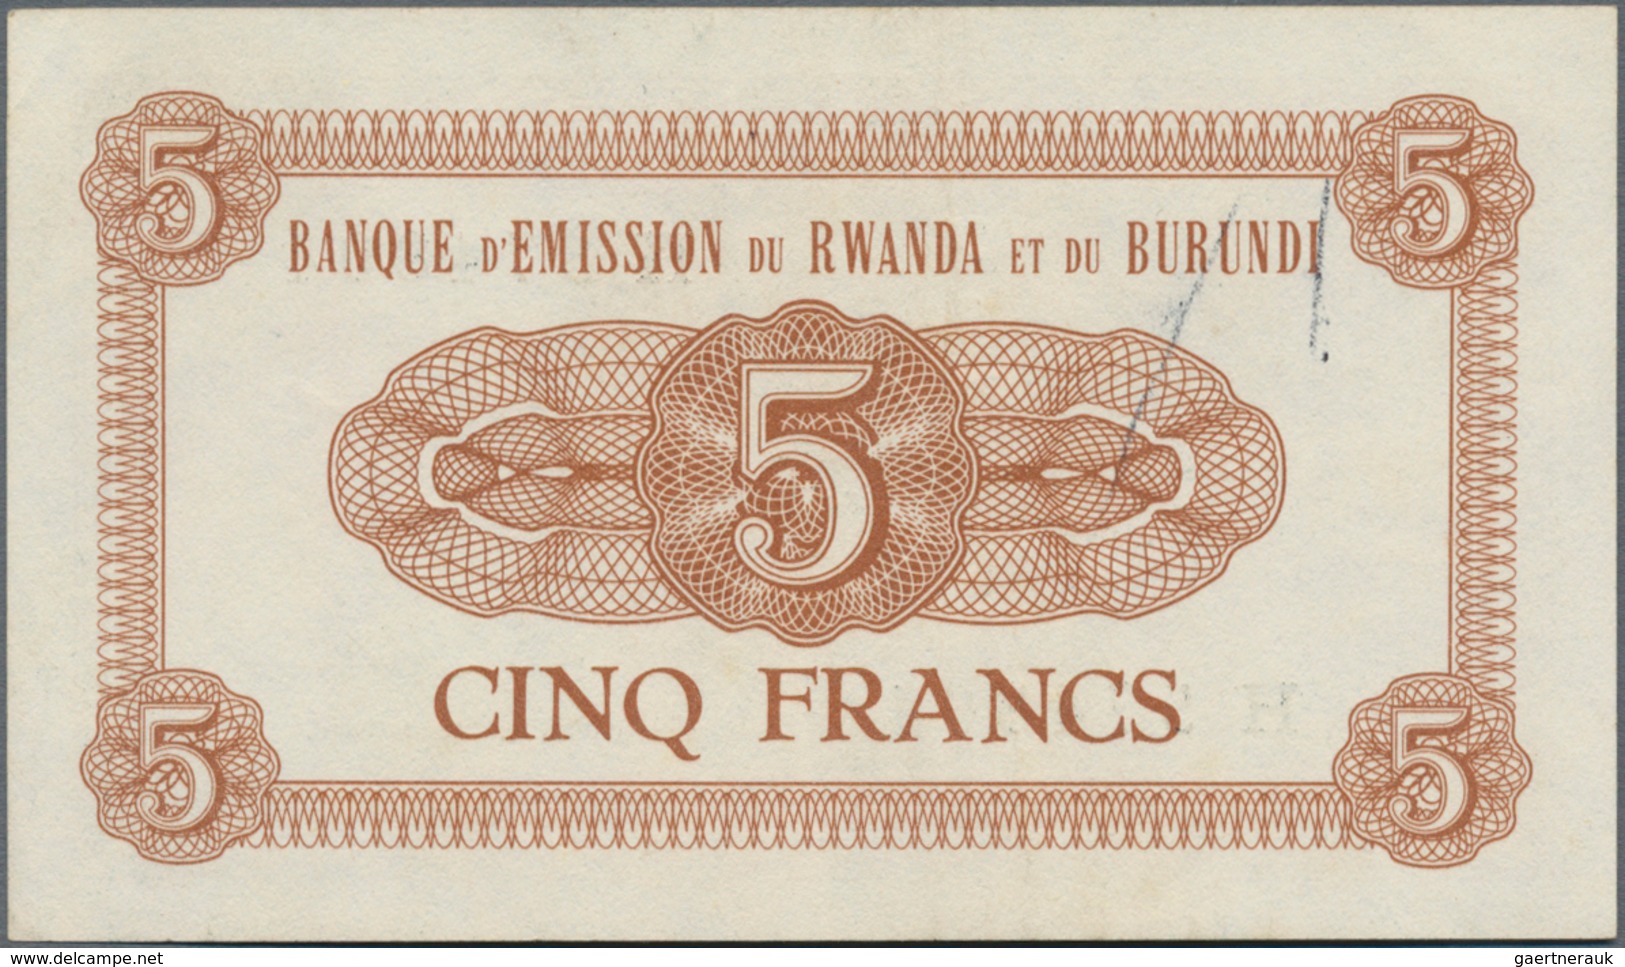 Rwanda-Burundi / Ruanda-Burundi: Banque D'Émission Du Rwanda Et Du Burundi 5 Francs 1961, P.1, Very - Ruanda-Burundi